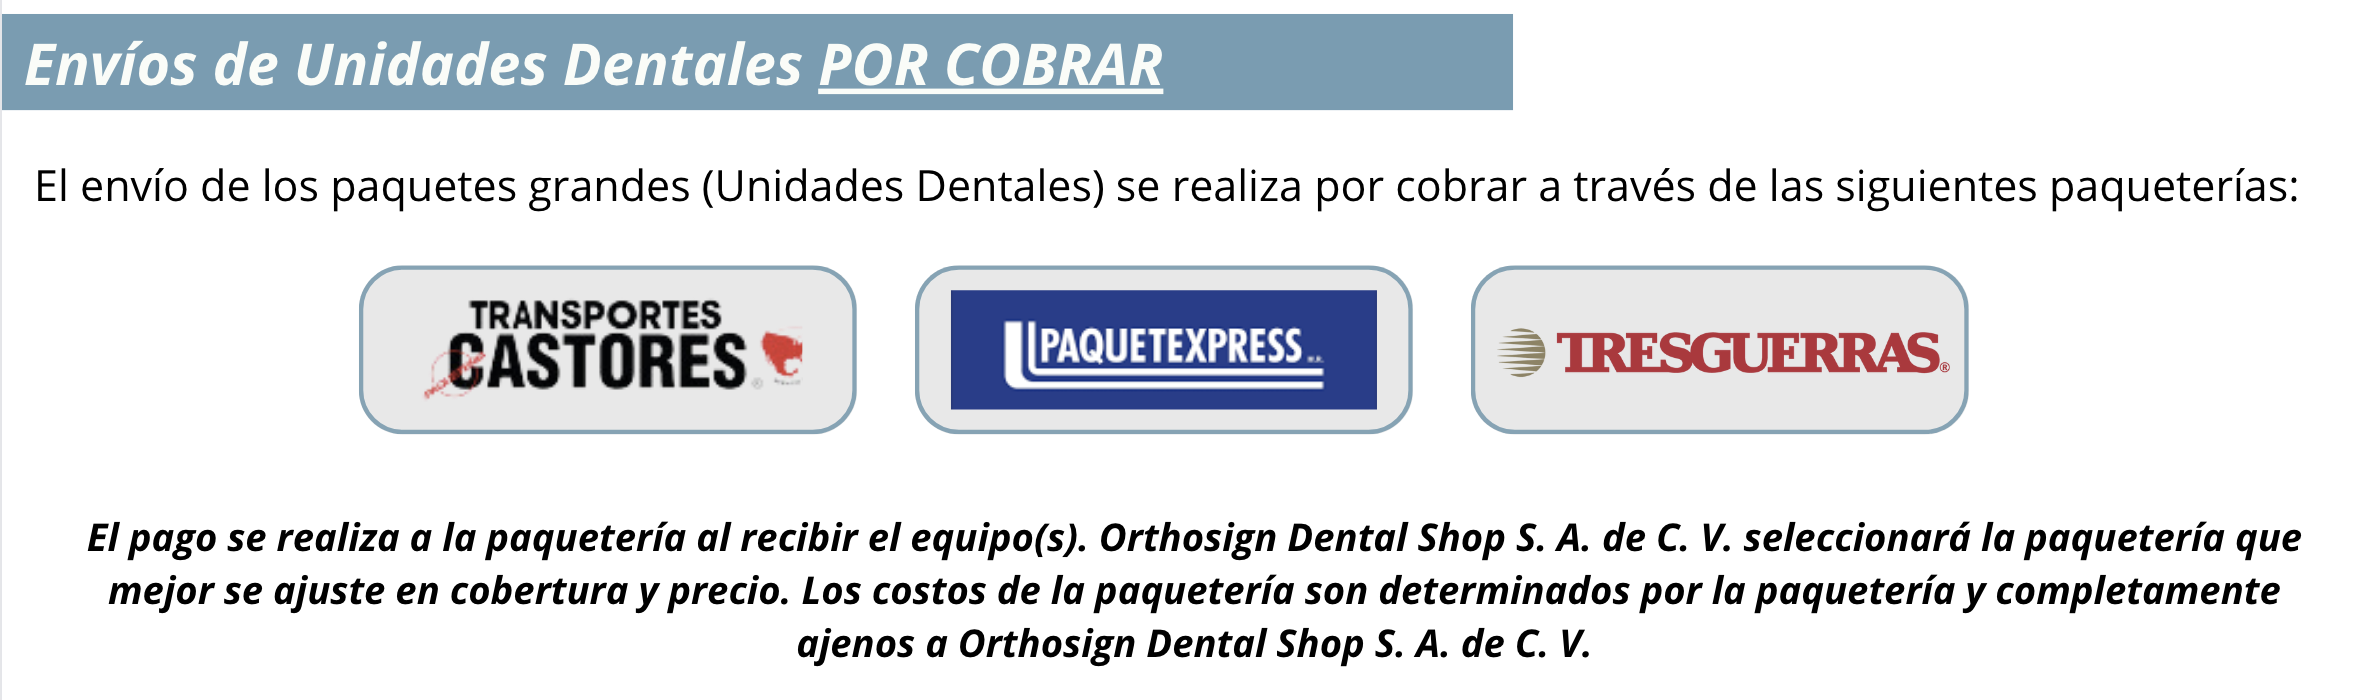 Información - Envío de Unidades Dentales